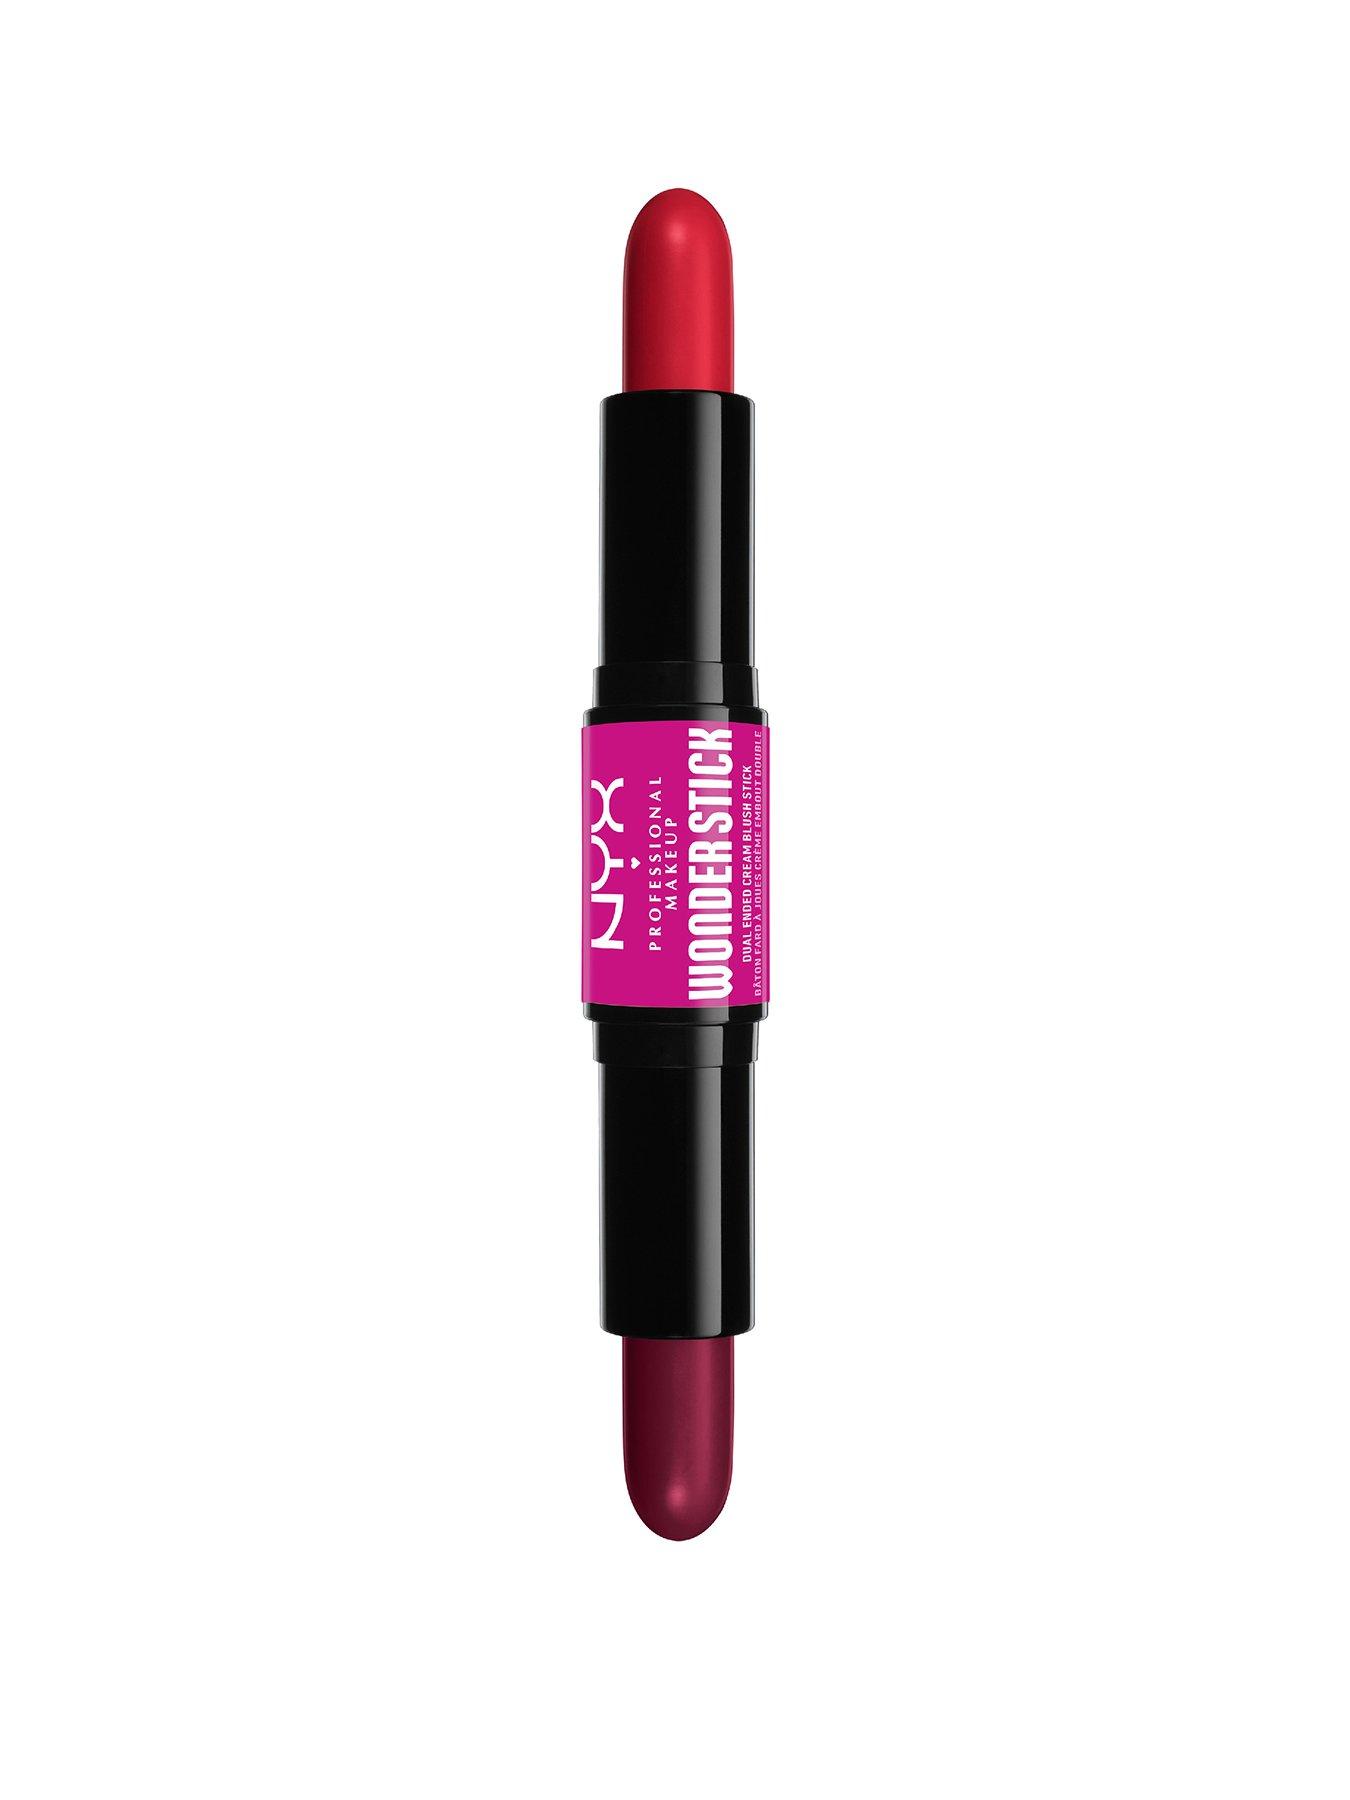 NYX Wonder Stick Blush Makeup sẽ giúp bạn trông rạng rỡ, tươi tắn và có sức sống hơn. Xem hình ảnh liên quan để tìm hiểu về cách sử dụng sản phẩm này để mang lại cho bạn làn da hồng hào và rạng rỡ.